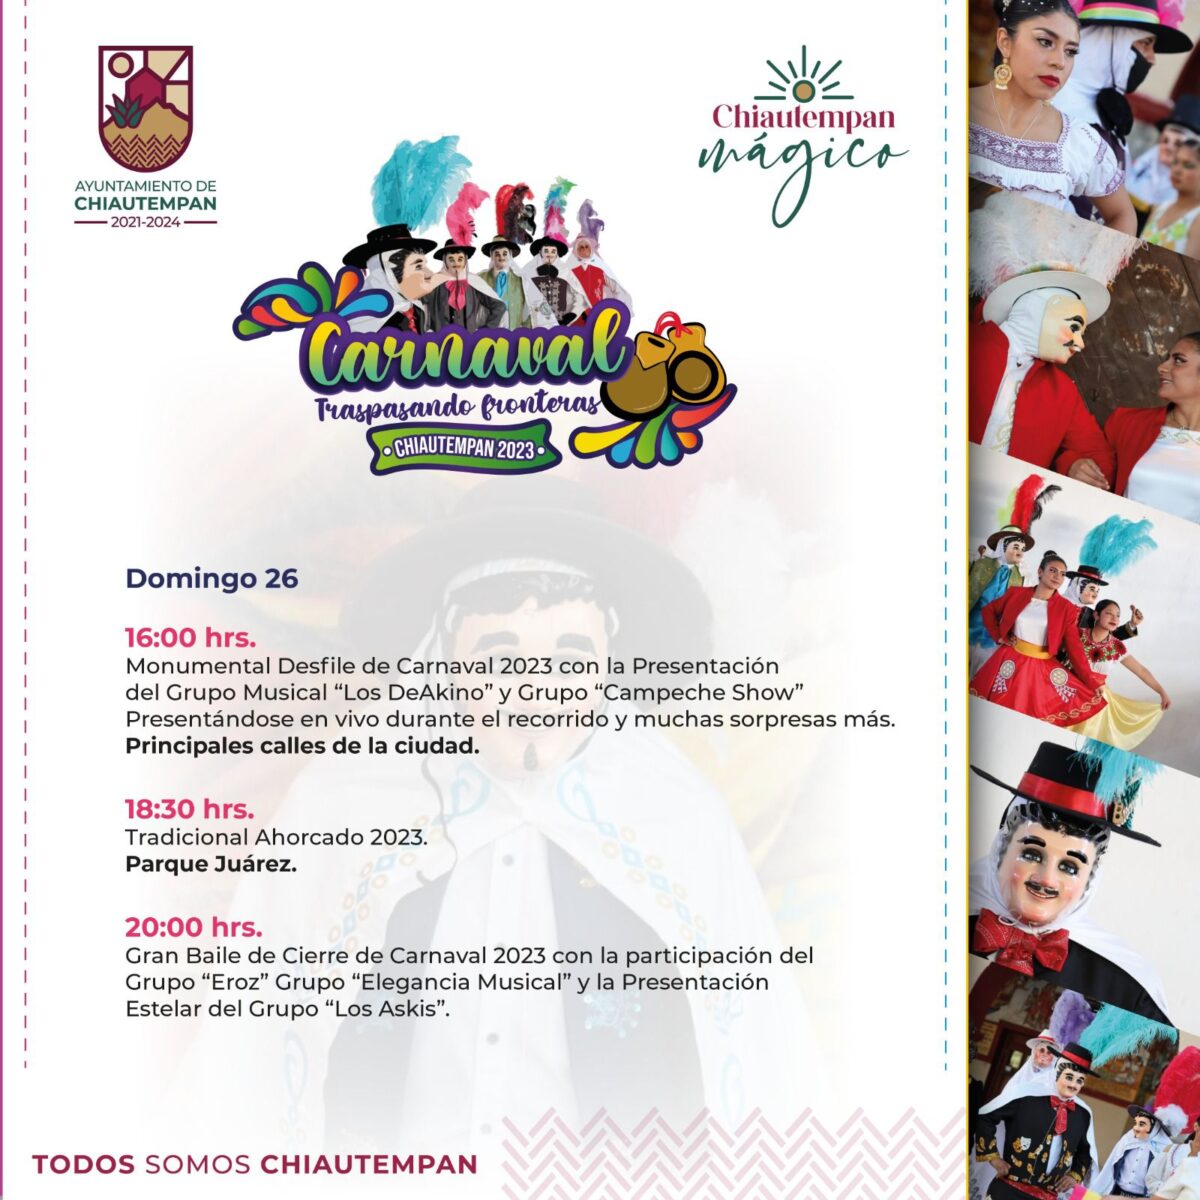 El domingo, gran remate de Carnaval en Chiautempan, habrá desfile y baile popular